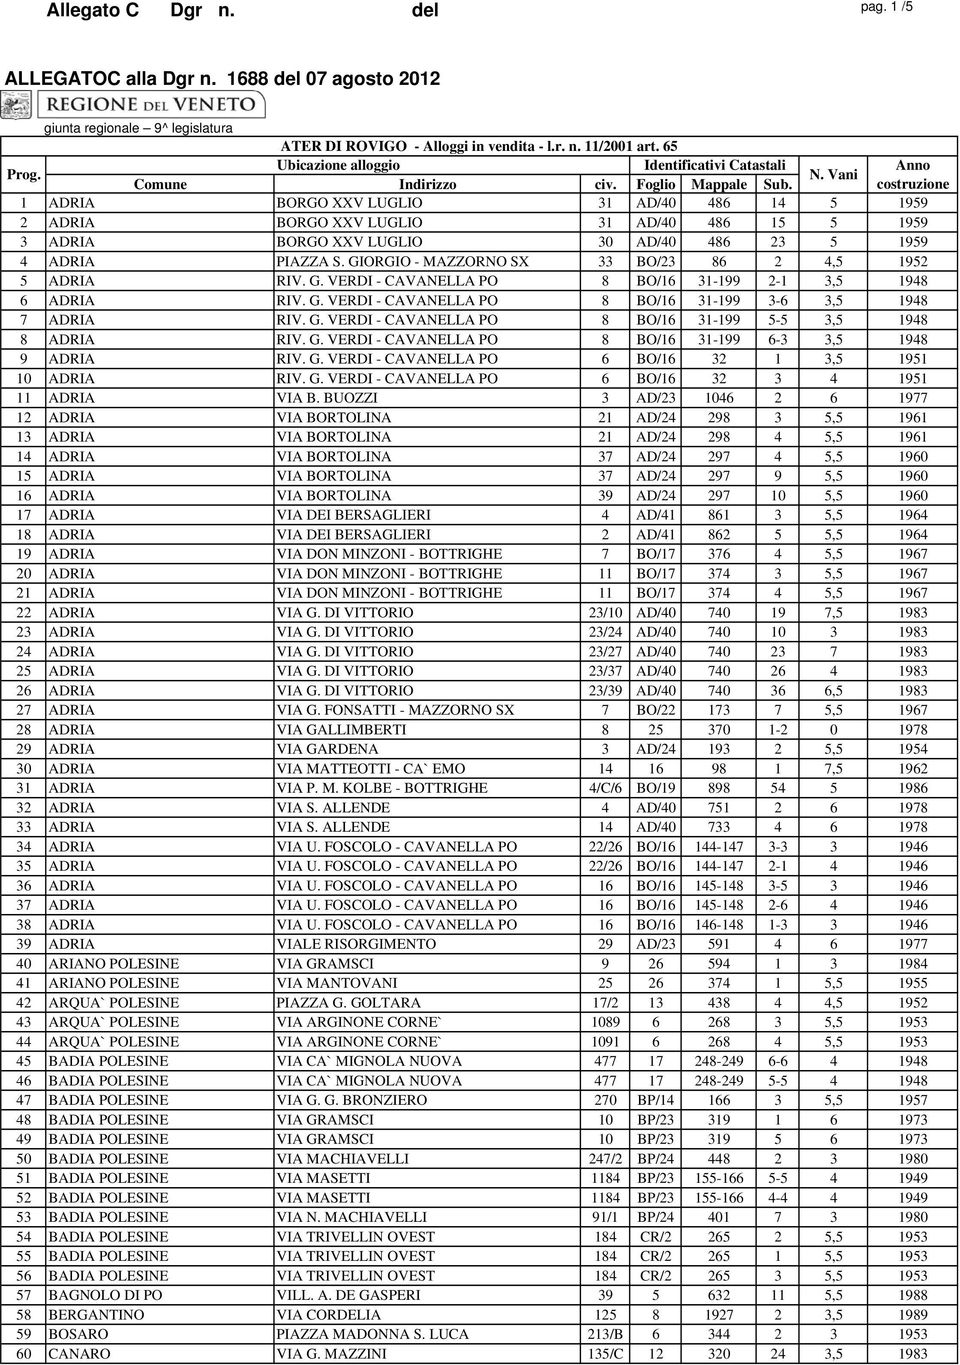 GIORGIO - MAZZORNO SX 33 BO/23 86 2 4,5 1952 5 ADRIA RIV. G. VERDI - CAVANELLA PO 8 BO/16 31-199 2-1 3,5 1948 6 ADRIA RIV. G. VERDI - CAVANELLA PO 8 BO/16 31-199 3-6 3,5 1948 7 ADRIA RIV. G. VERDI - CAVANELLA PO 8 BO/16 31-199 5-5 3,5 1948 8 ADRIA RIV.